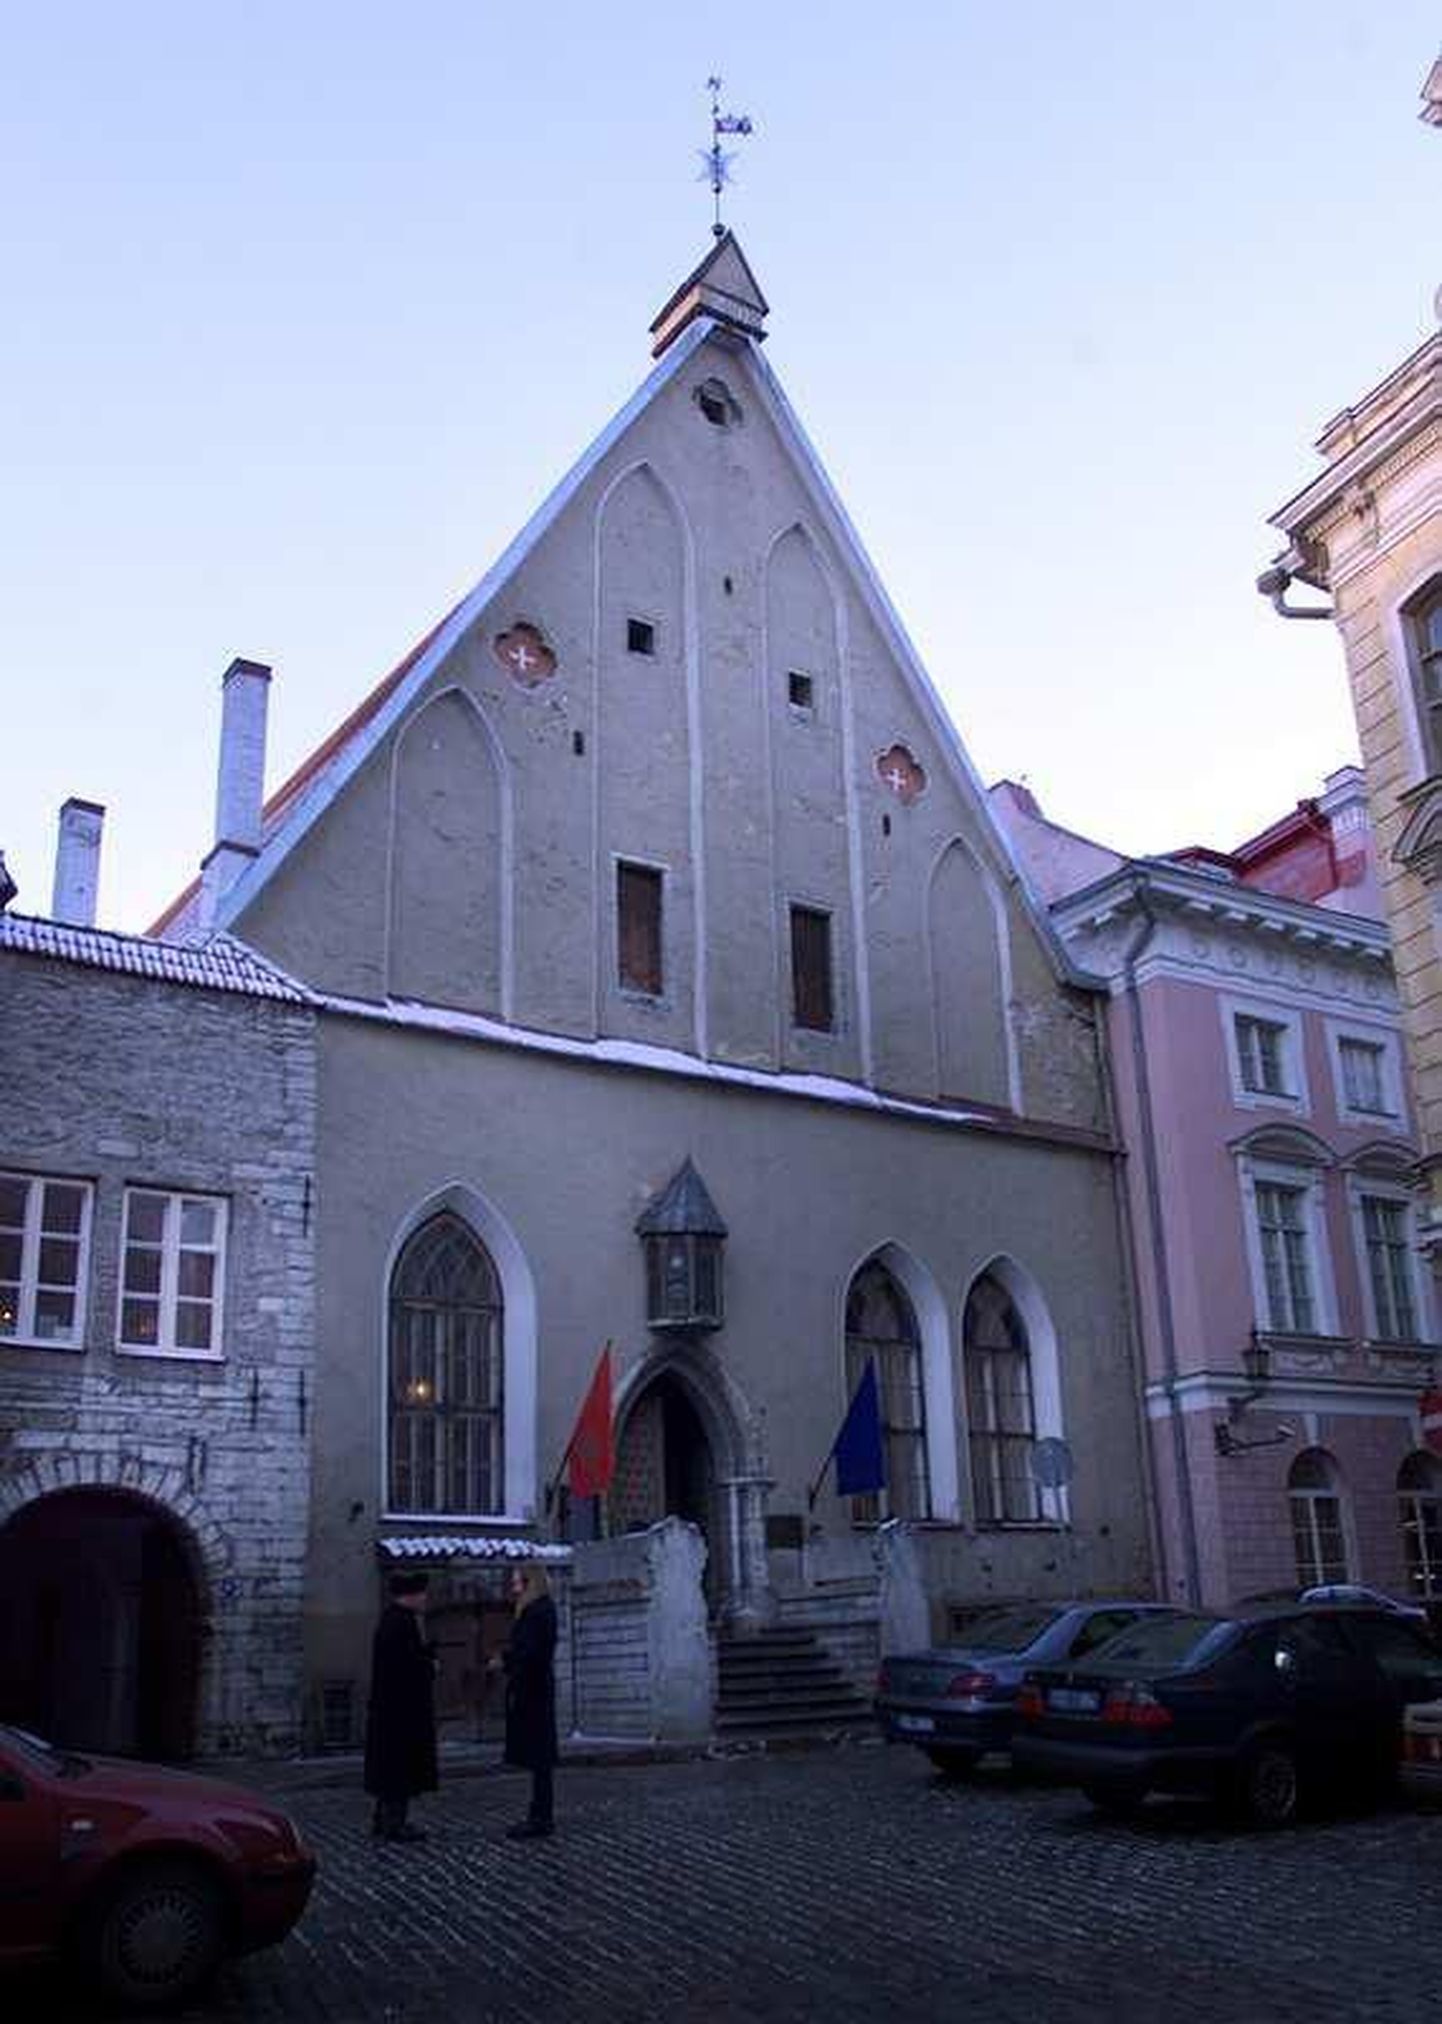 Ajaloomuuseumi hoone Tallinna vanalinnas Pikal tänaval.